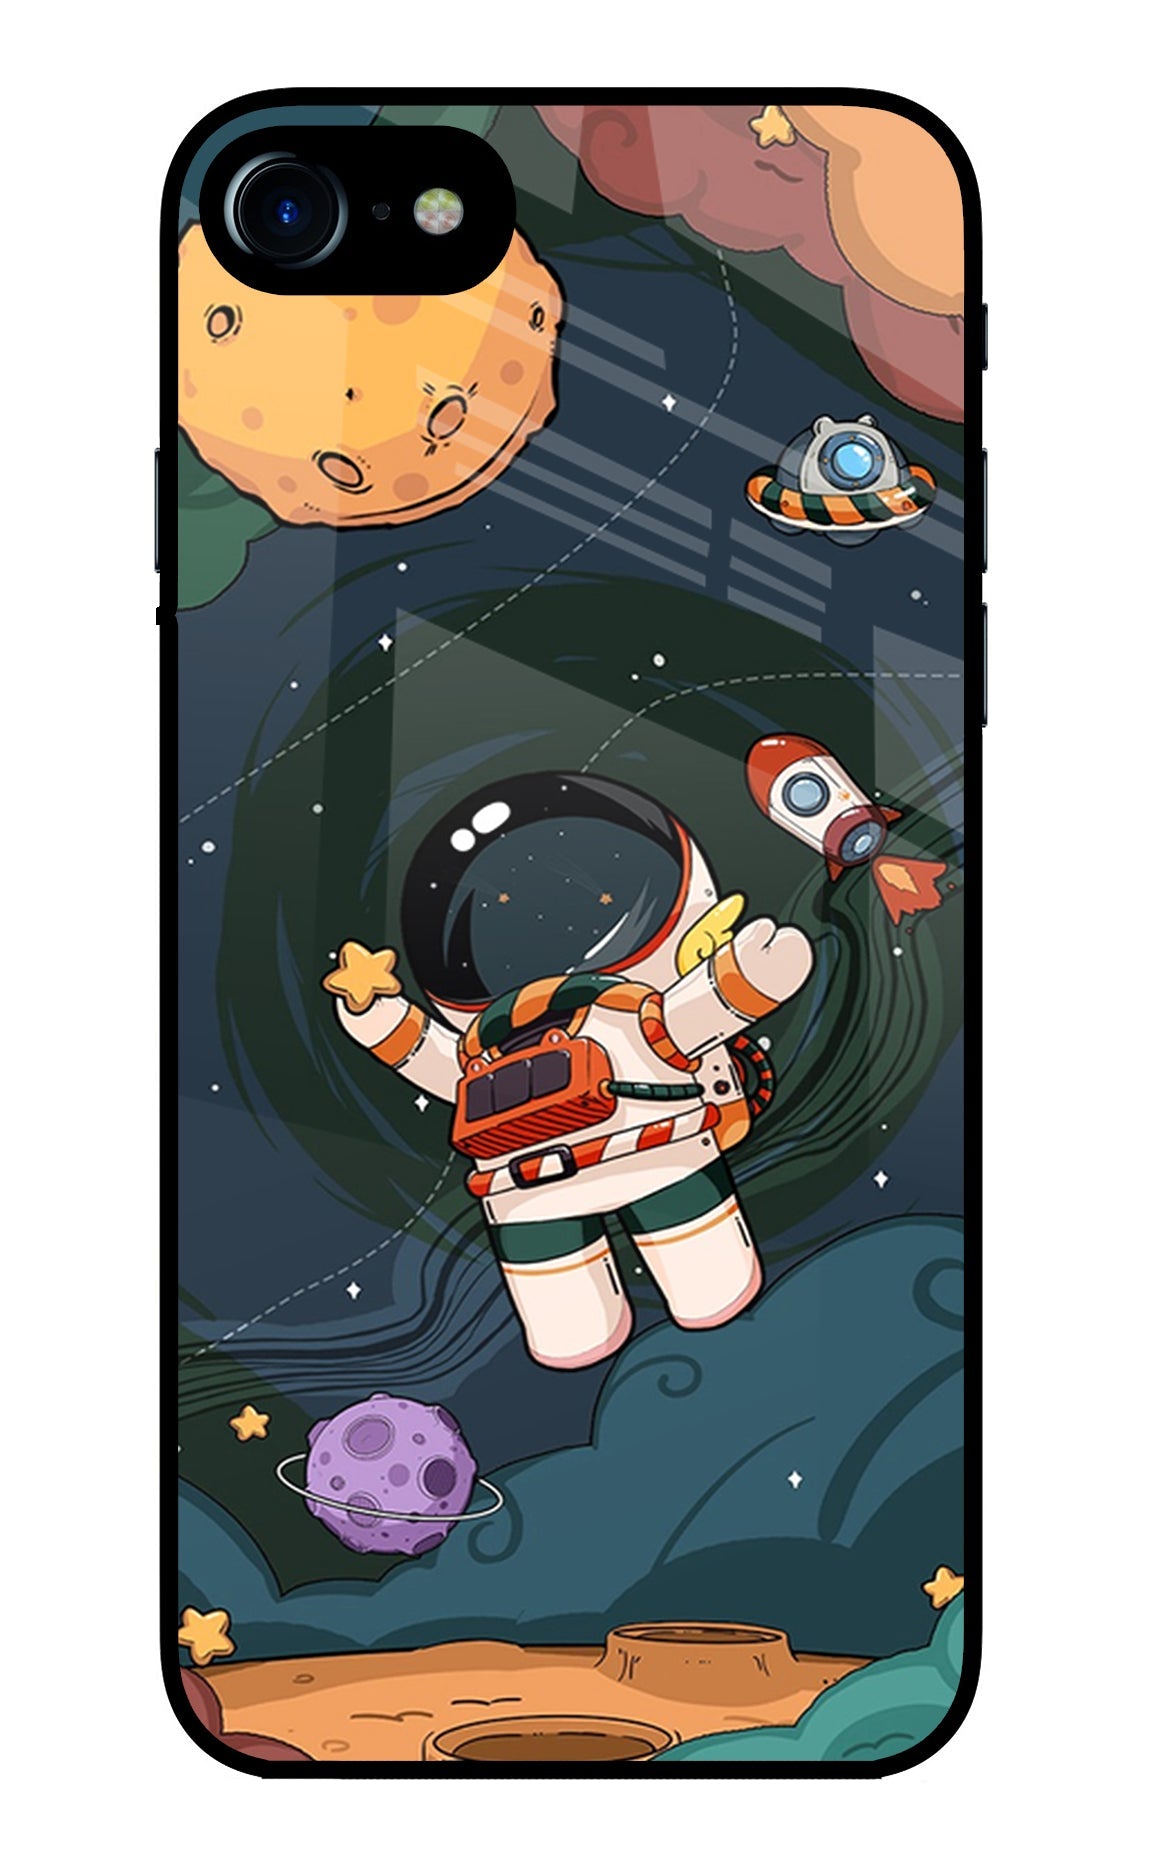 Cartoon Astronaut iPhone 8/SE 2020 Glass Case